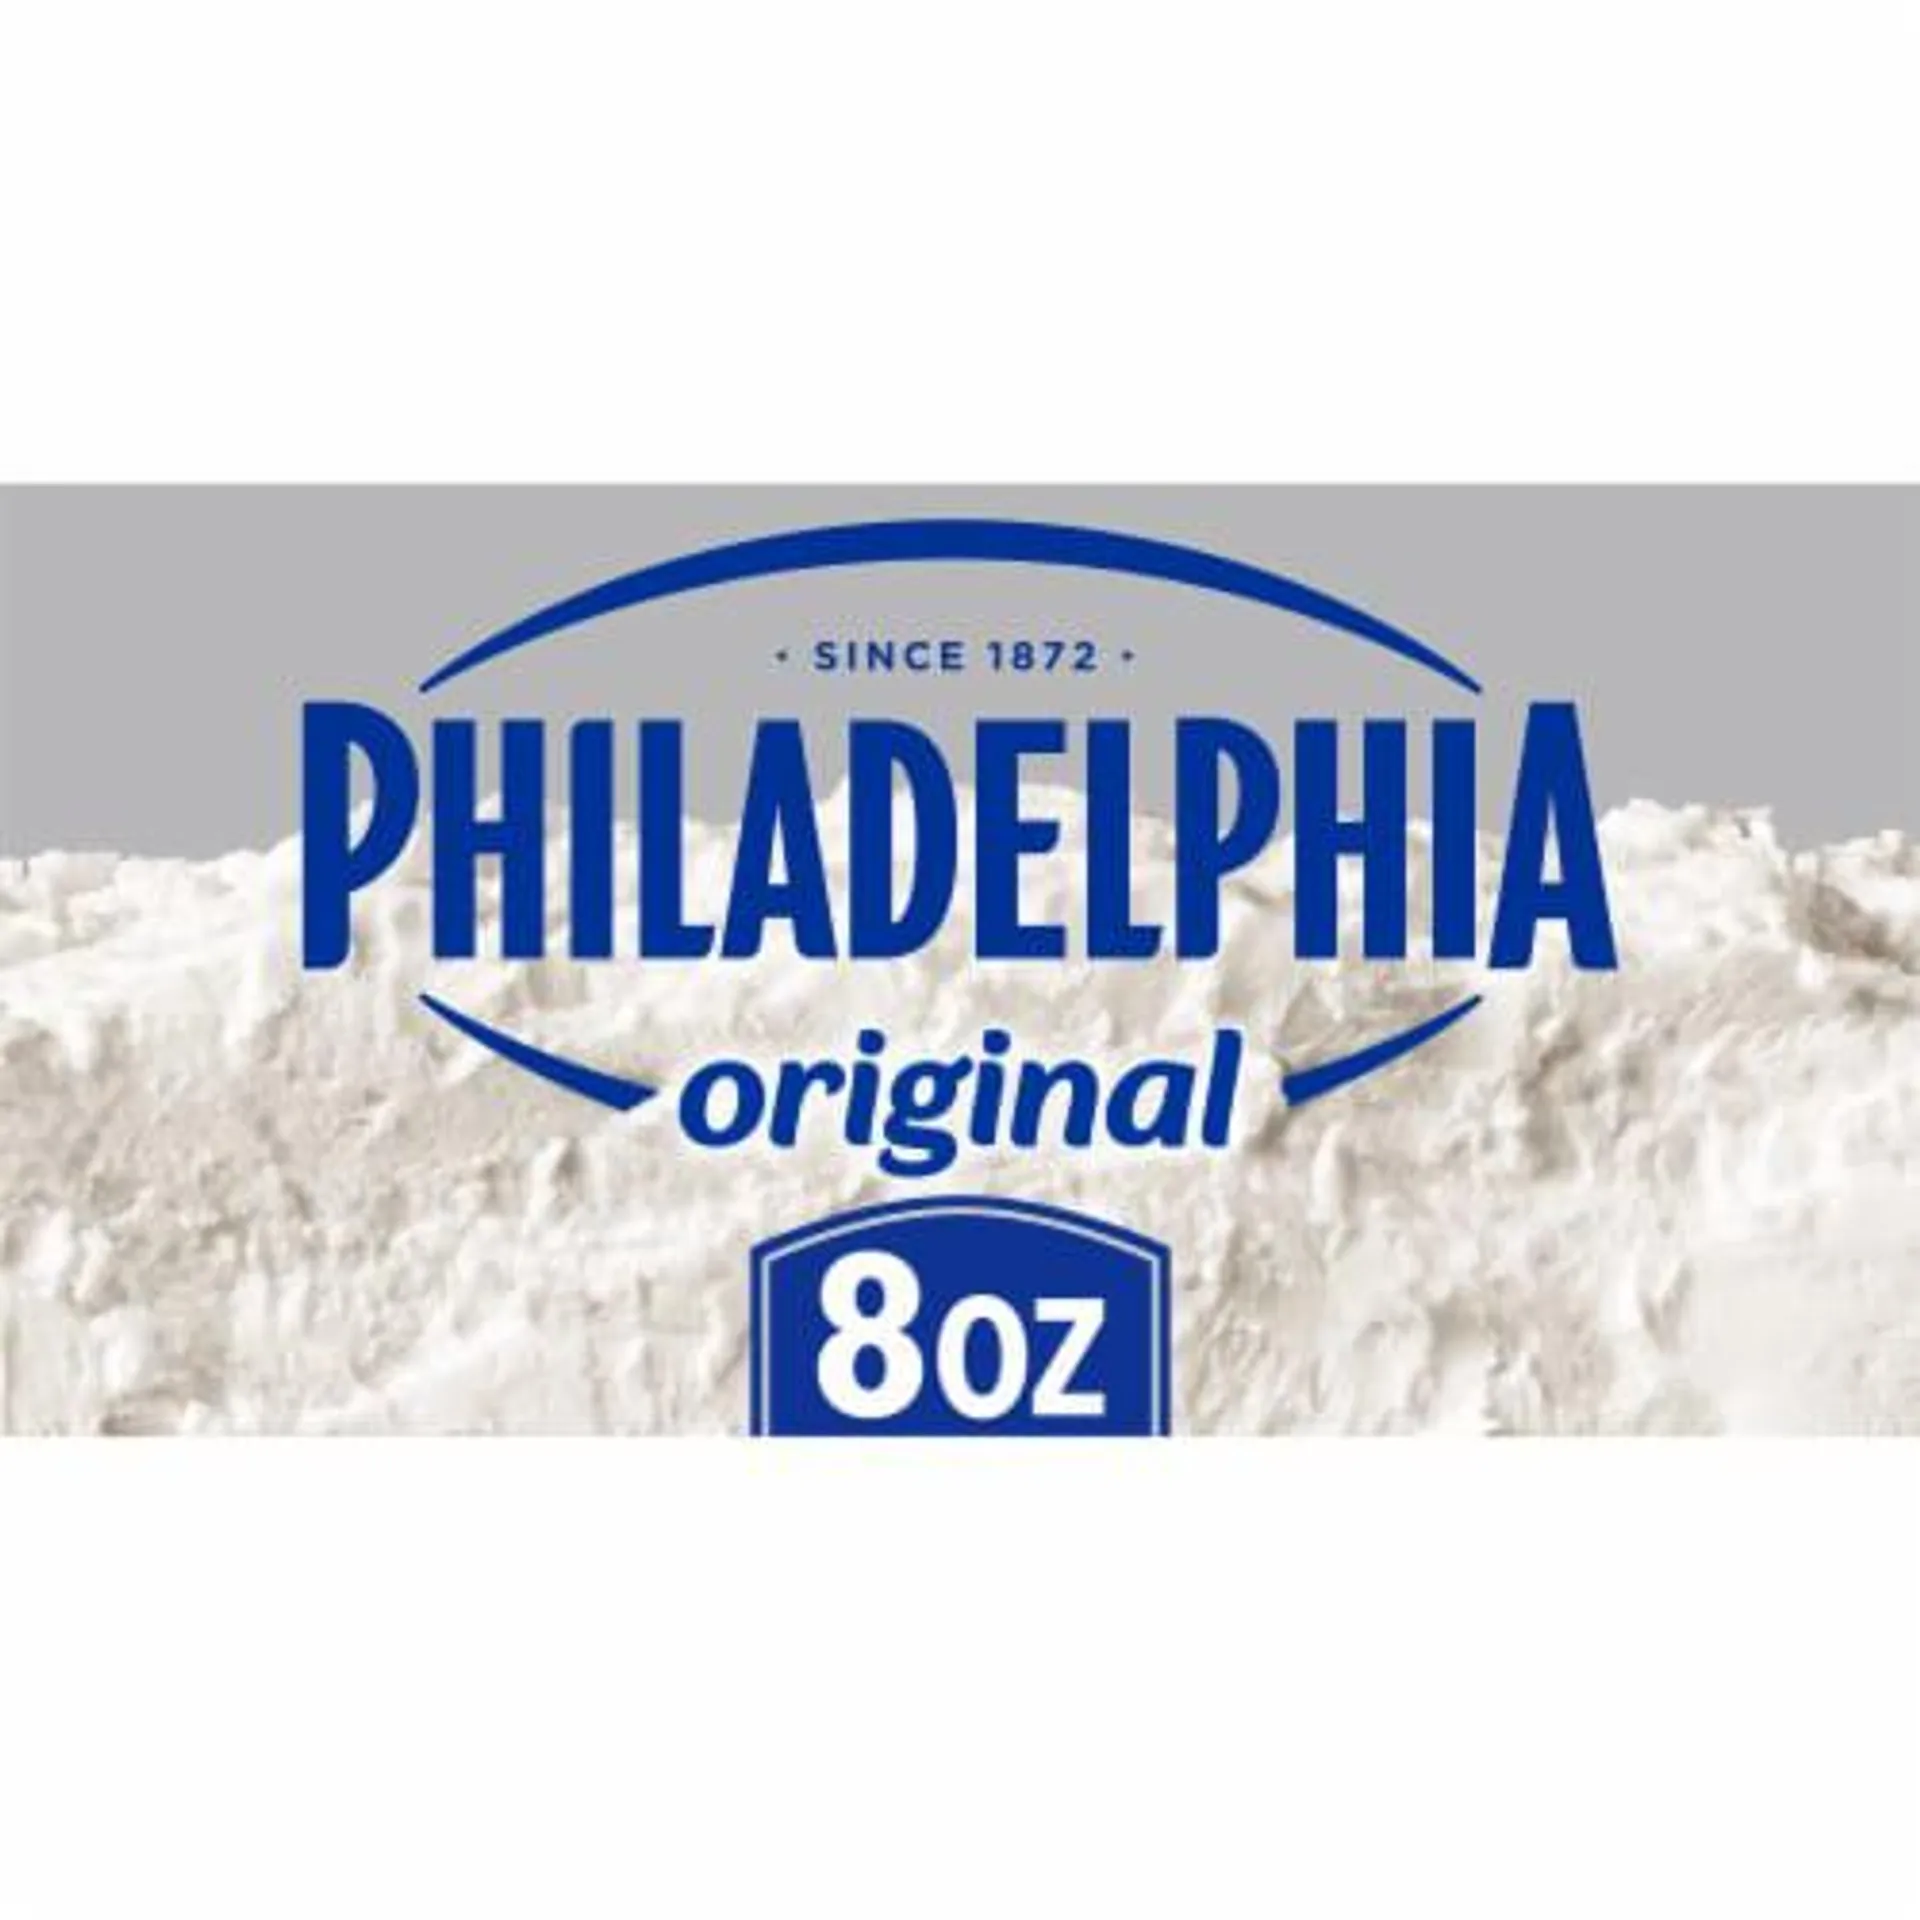 Philadelphia Original Cream Cheese